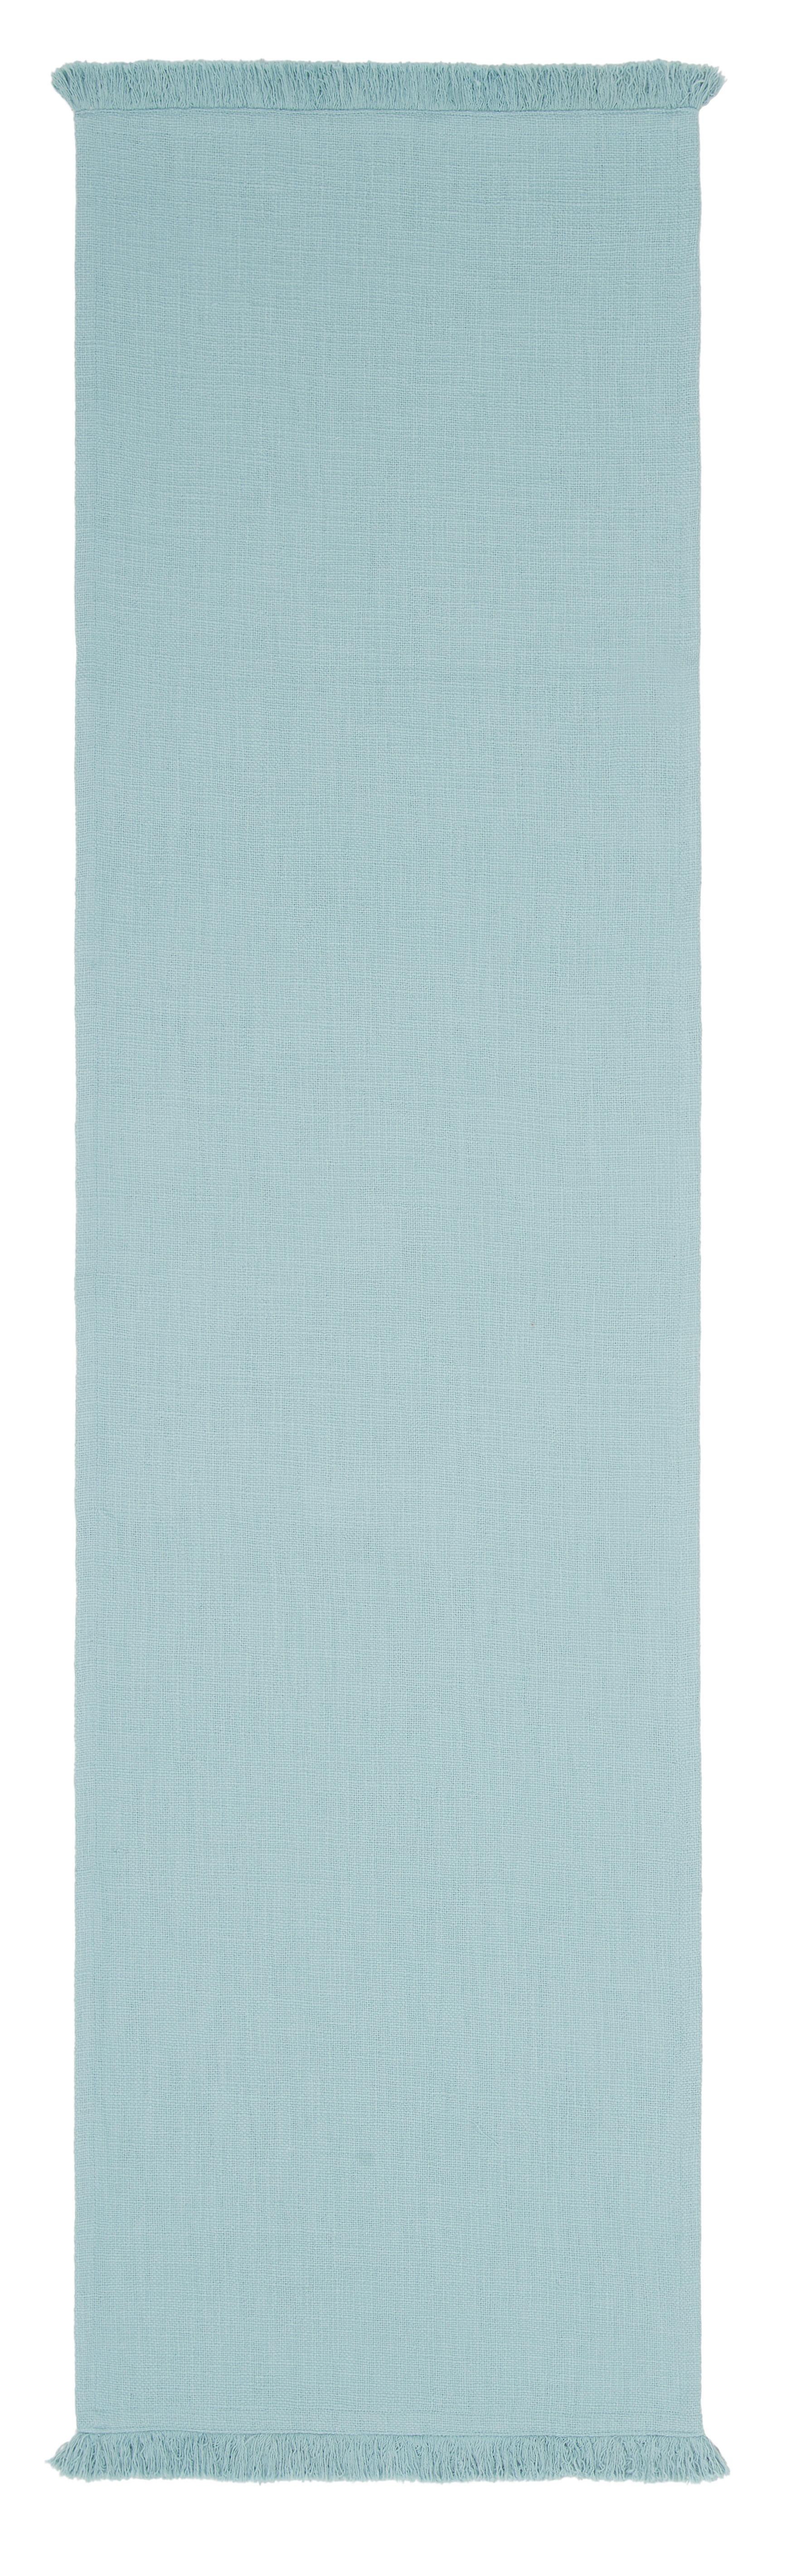 Běhoun Na Stůl Pablo, 45/170cm, Modrá - modrá, Moderní, textil (45/170cm) - Premium Living